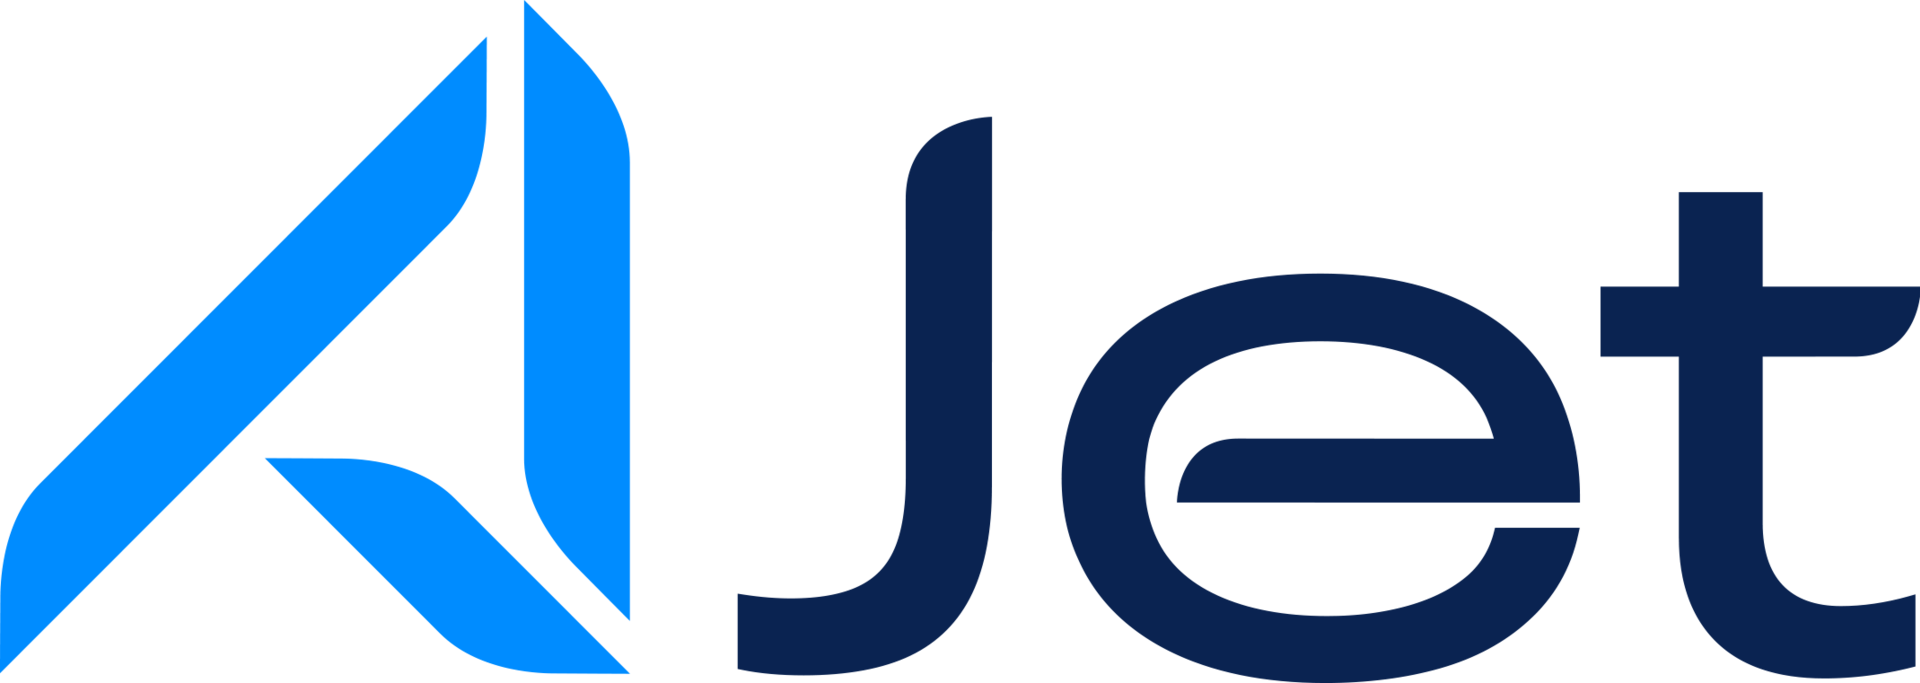 TKJ logo